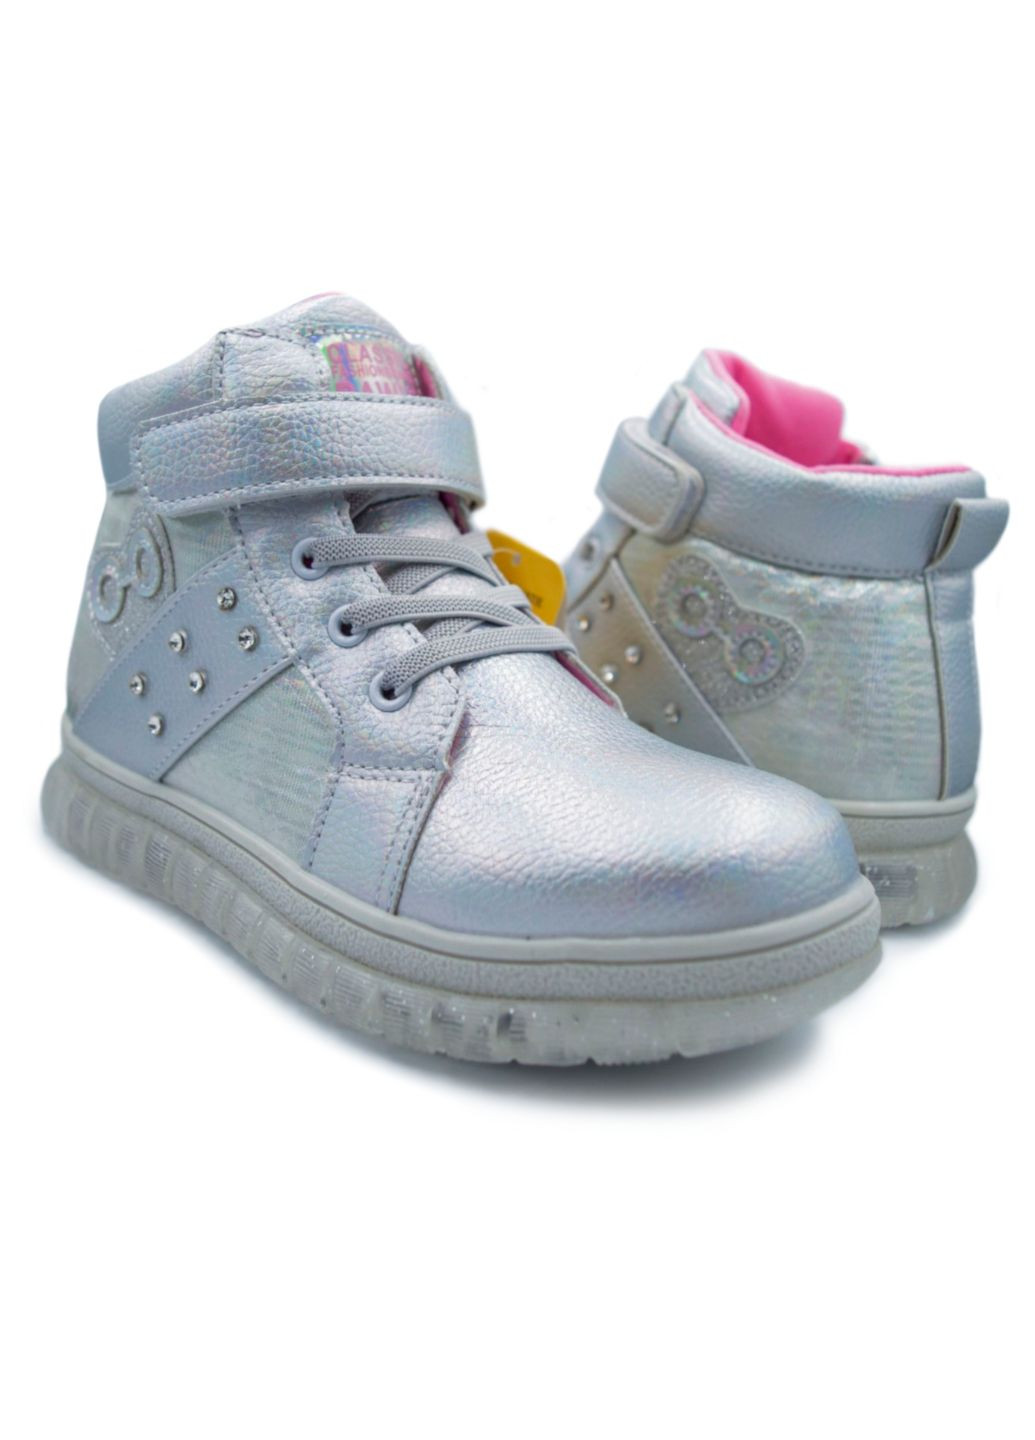 Серебряные осенние демисезонная обувь для девочки, ботинки, сапожки, р.28-33 Clibee